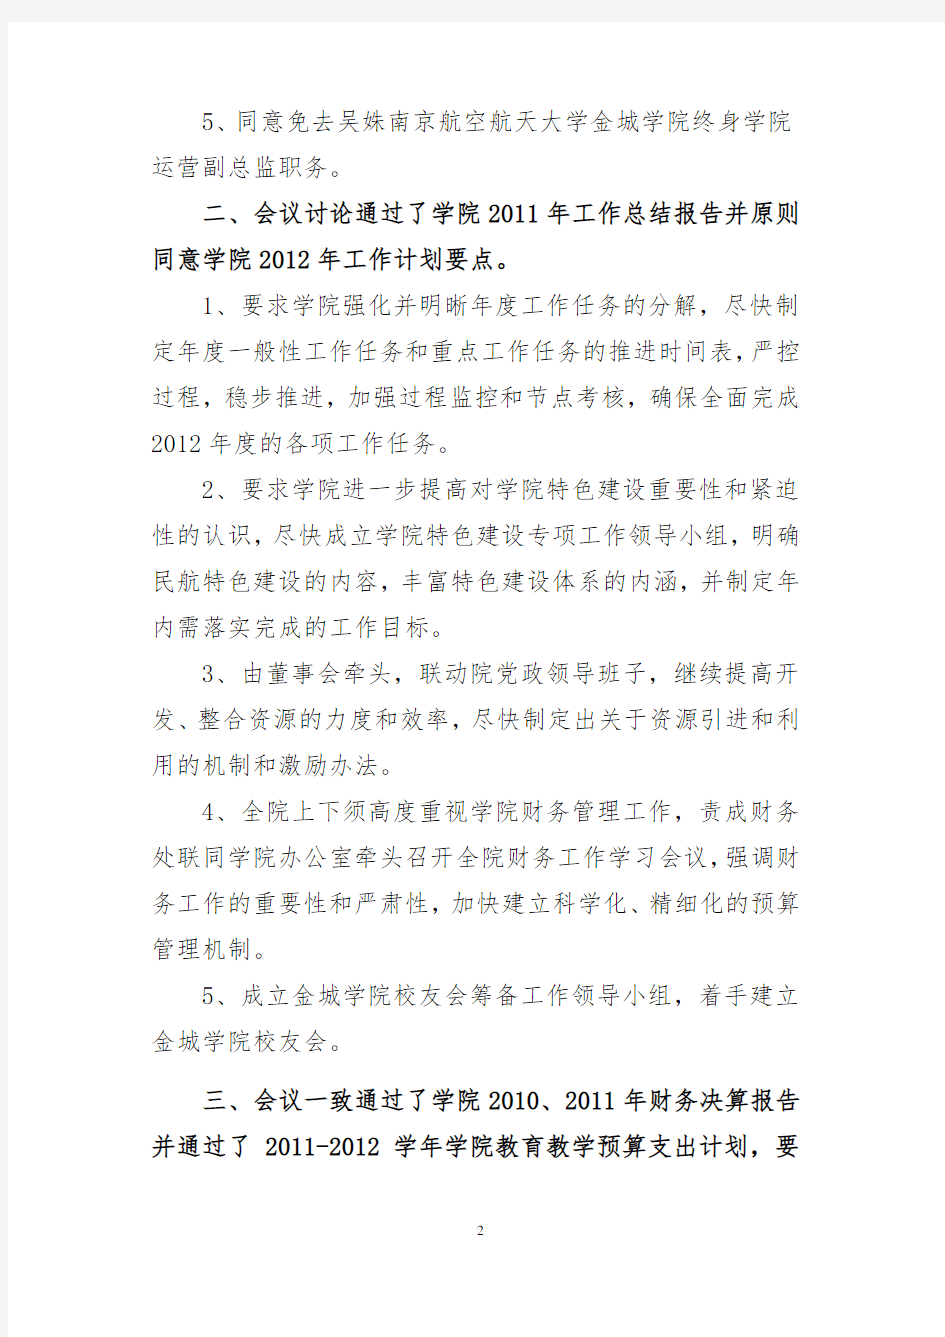 南京航空航天大学金城学院董事会二届七次会议决议